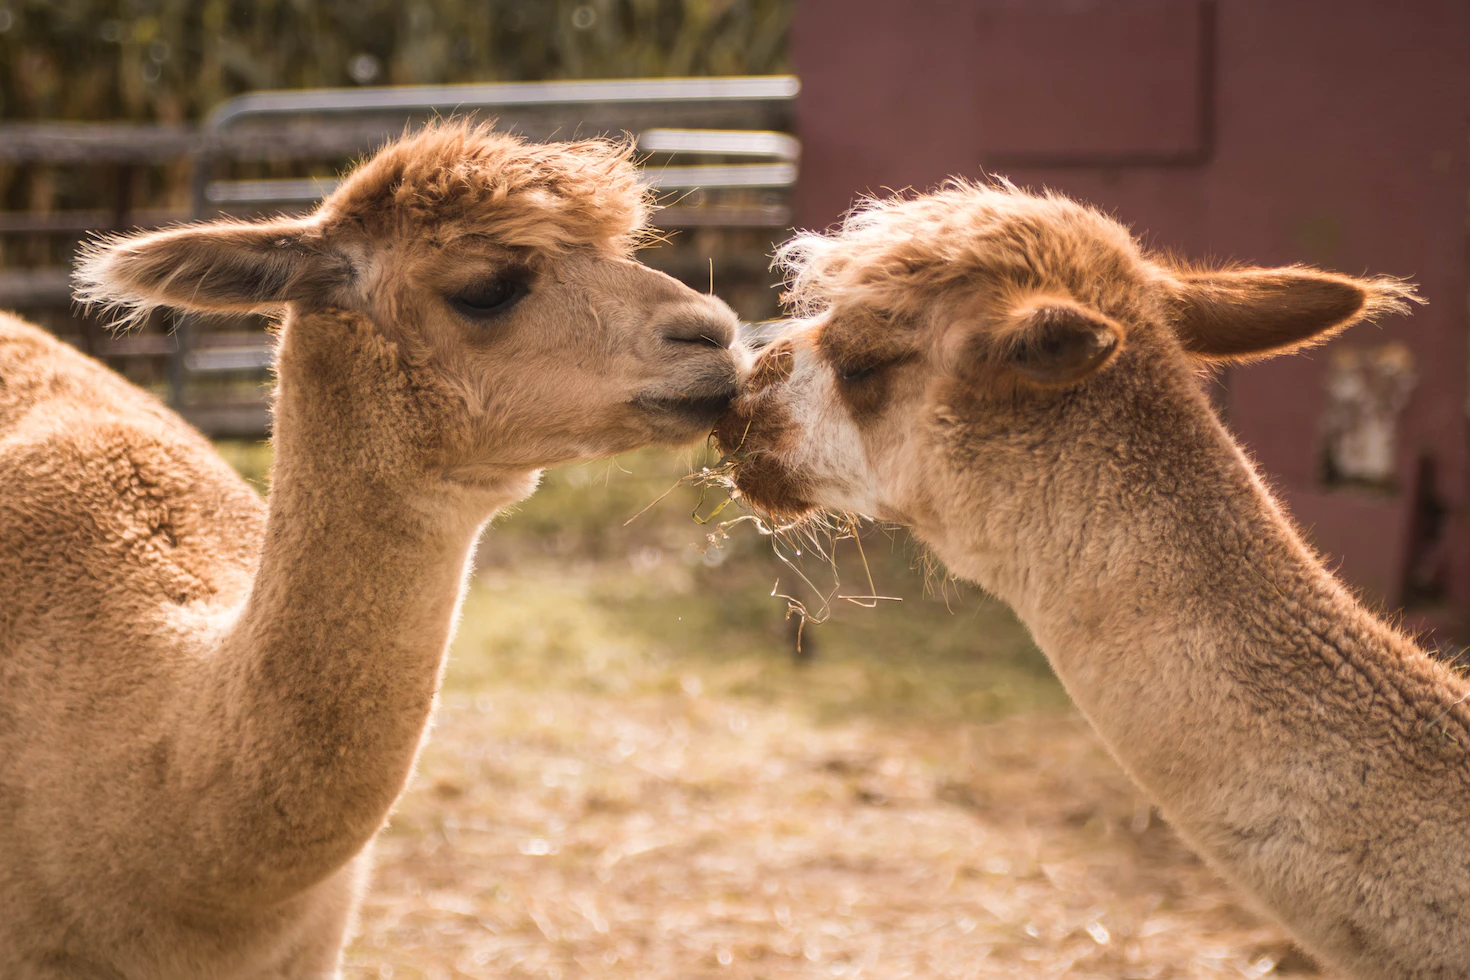 An image of two llamas.